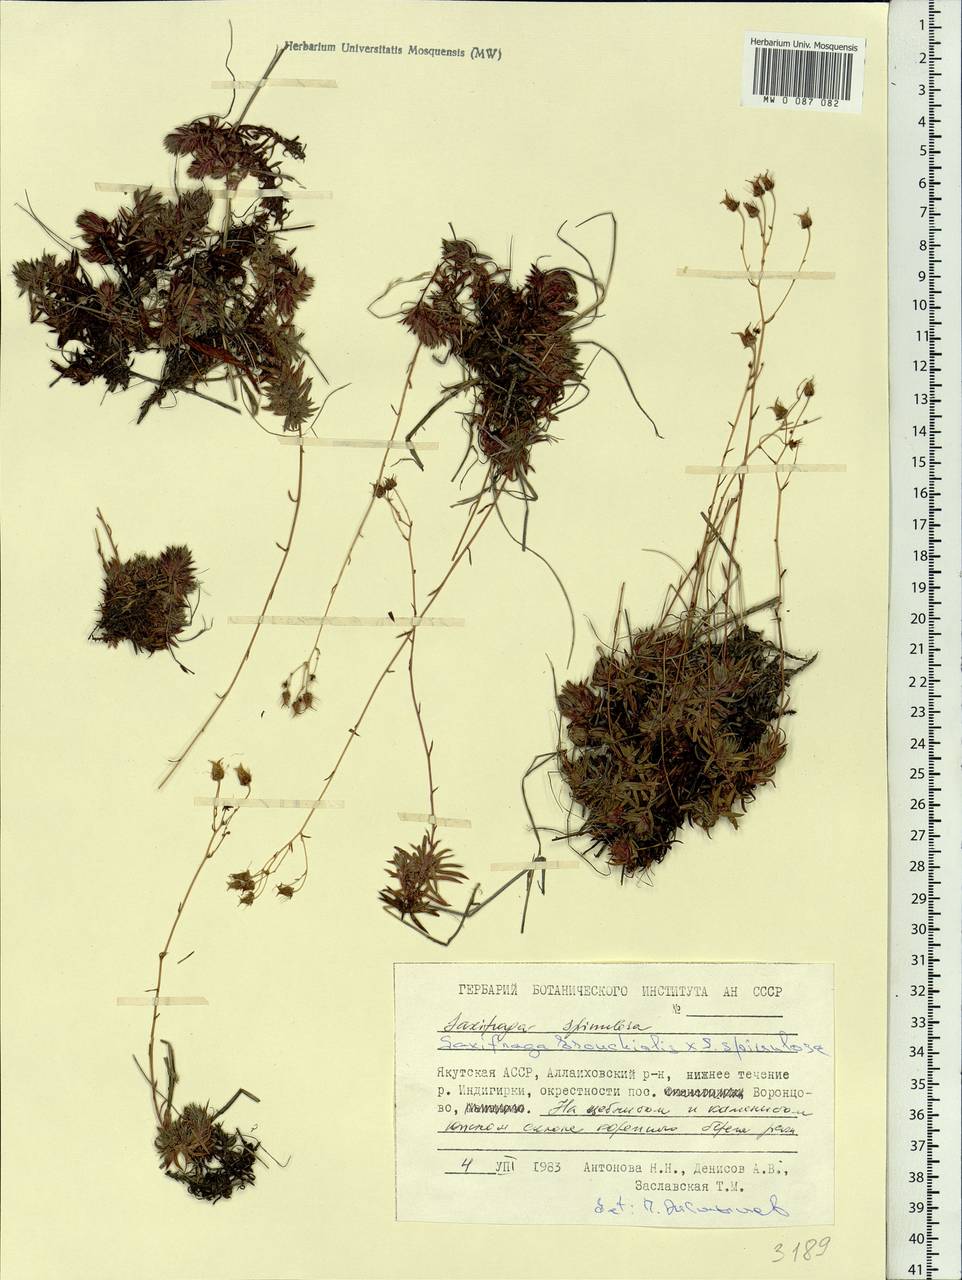 Saxifraga bronchialis subsp. bronchialis, Siberia, Yakutia (S5) (Russia)